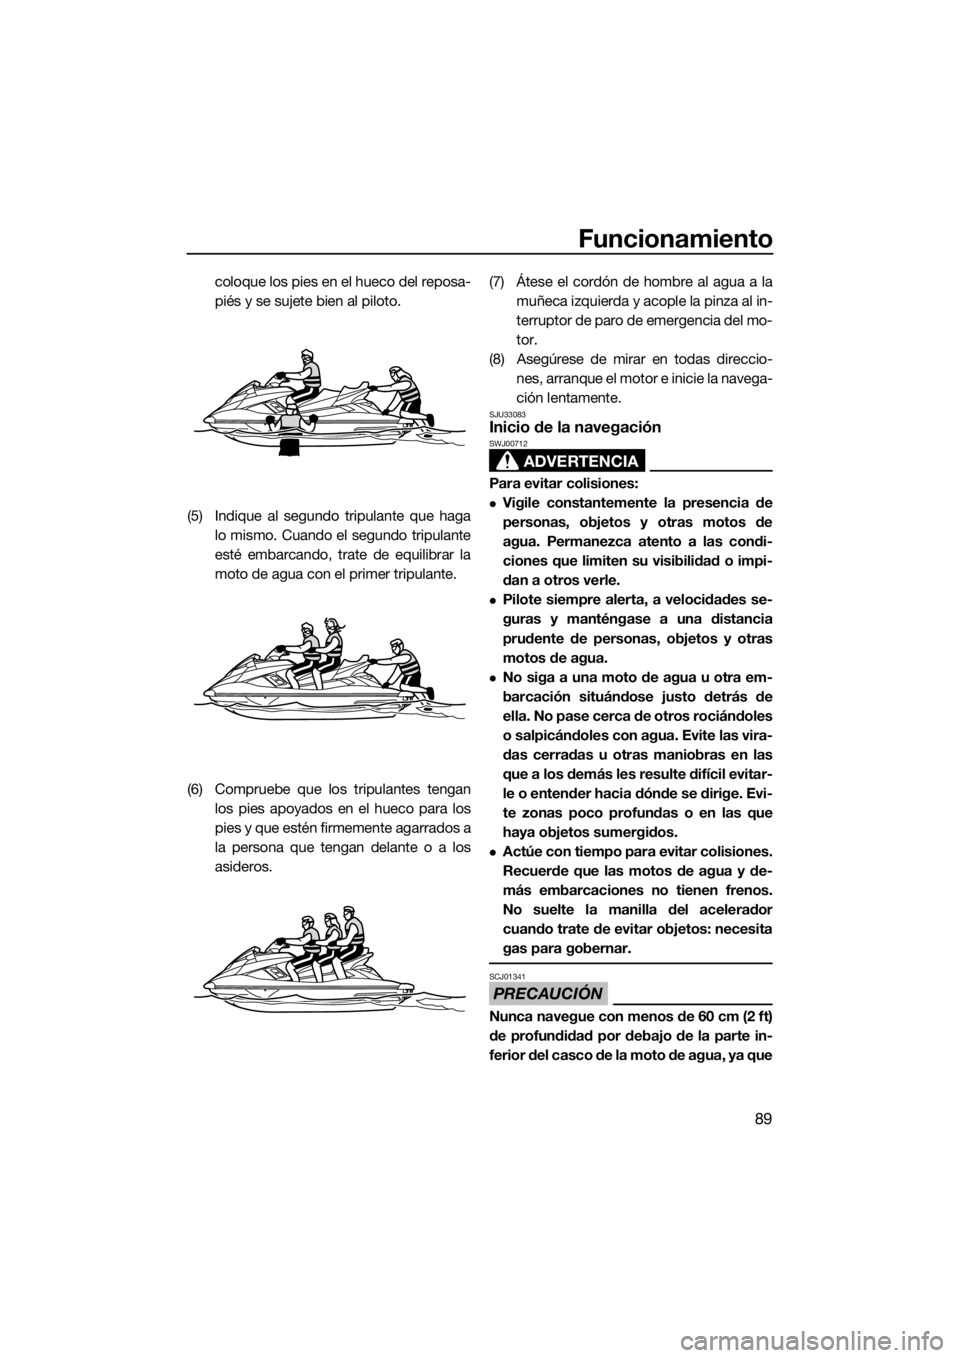 YAMAHA FX HO CRUISER 2017  Manuale de Empleo (in Spanish) Funcionamiento
89
coloque los pies en el hueco del reposa-
piés y se sujete bien al piloto.
(5) Indique al segundo tripulante que haga
lo mismo. Cuando el segundo tripulante
esté embarcando, trate d